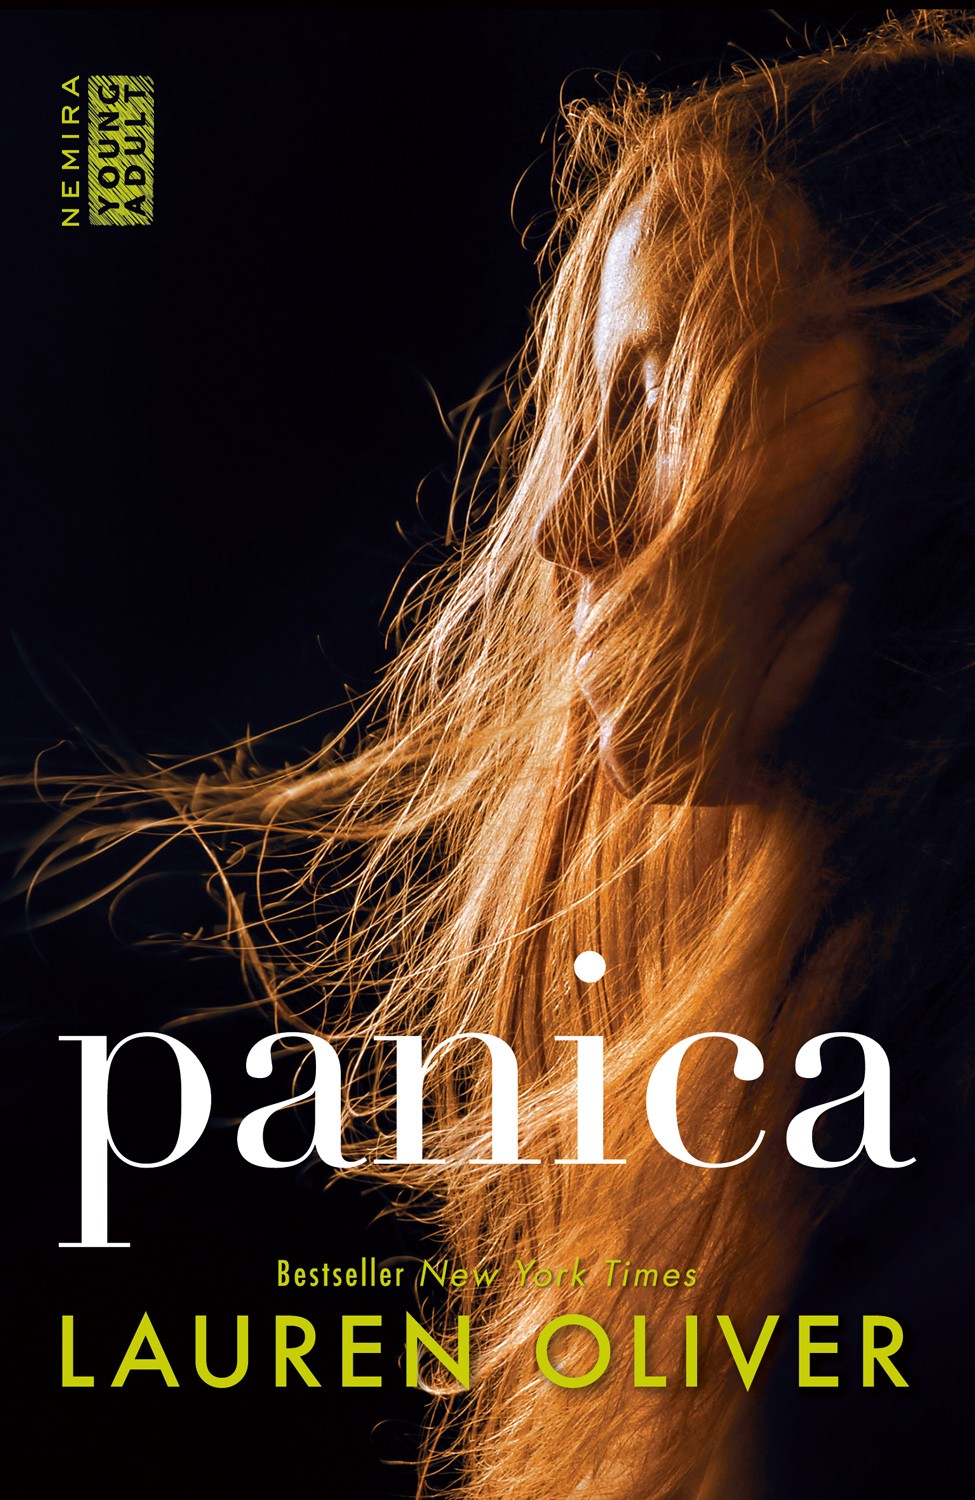 Panica - Lauren Oliver